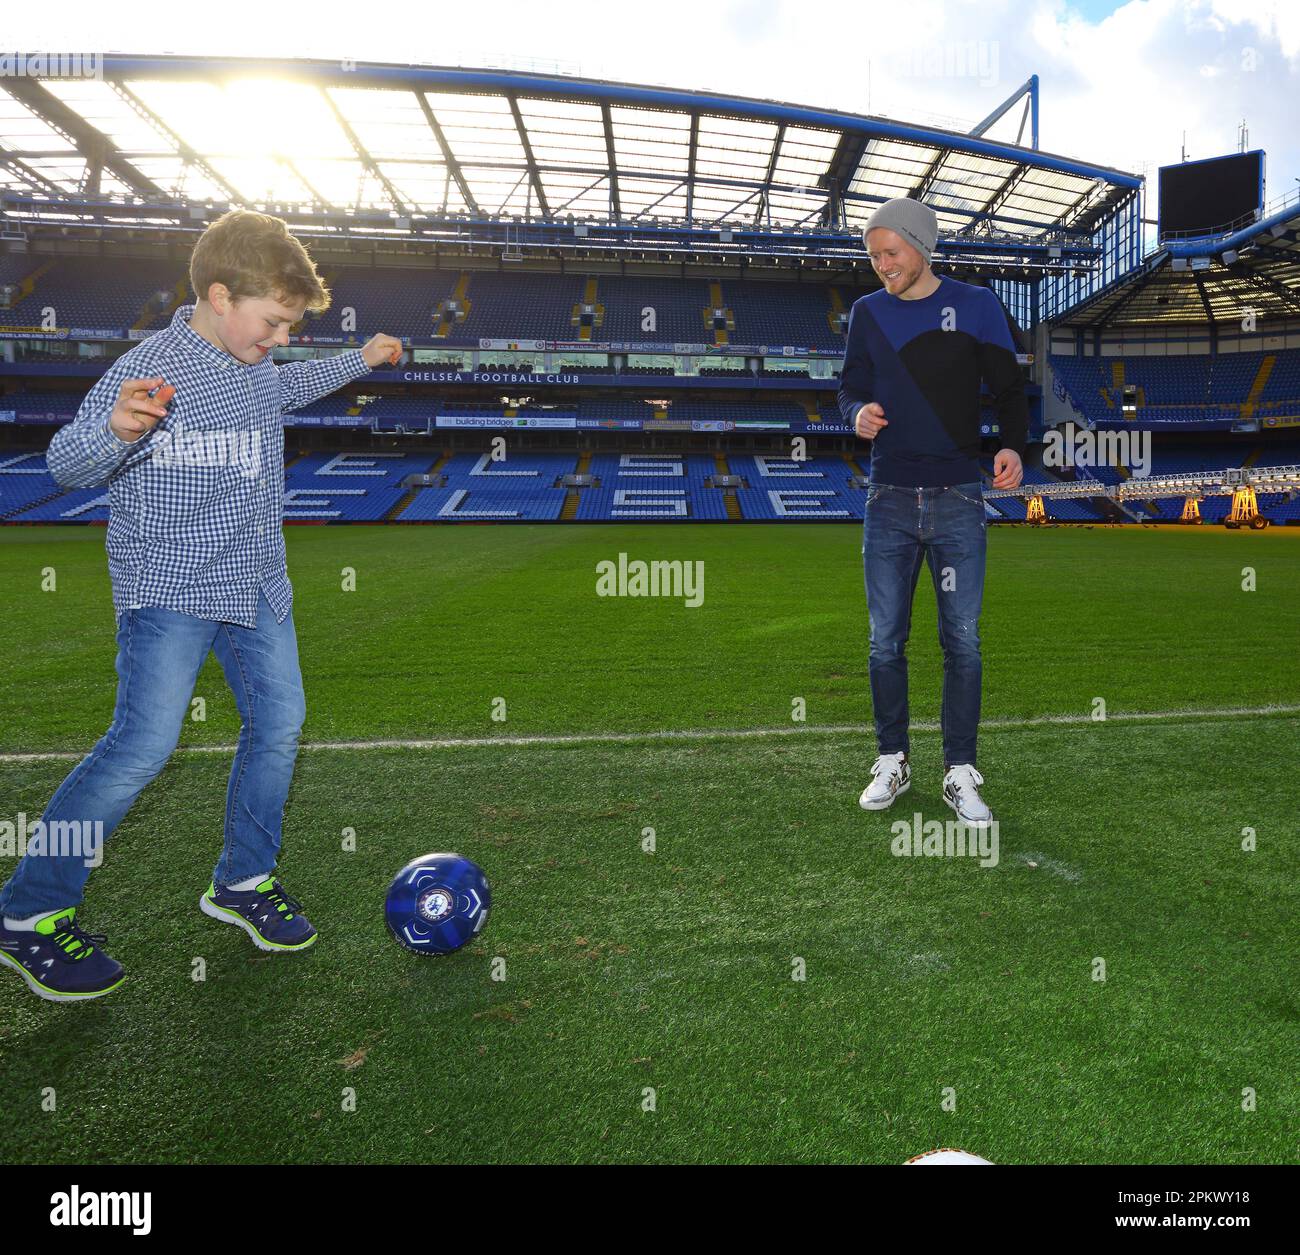 Royaume-Uni / Londres / Stamford Bridge / Premier League club Chelsea / andre schuerrle Banque D'Images